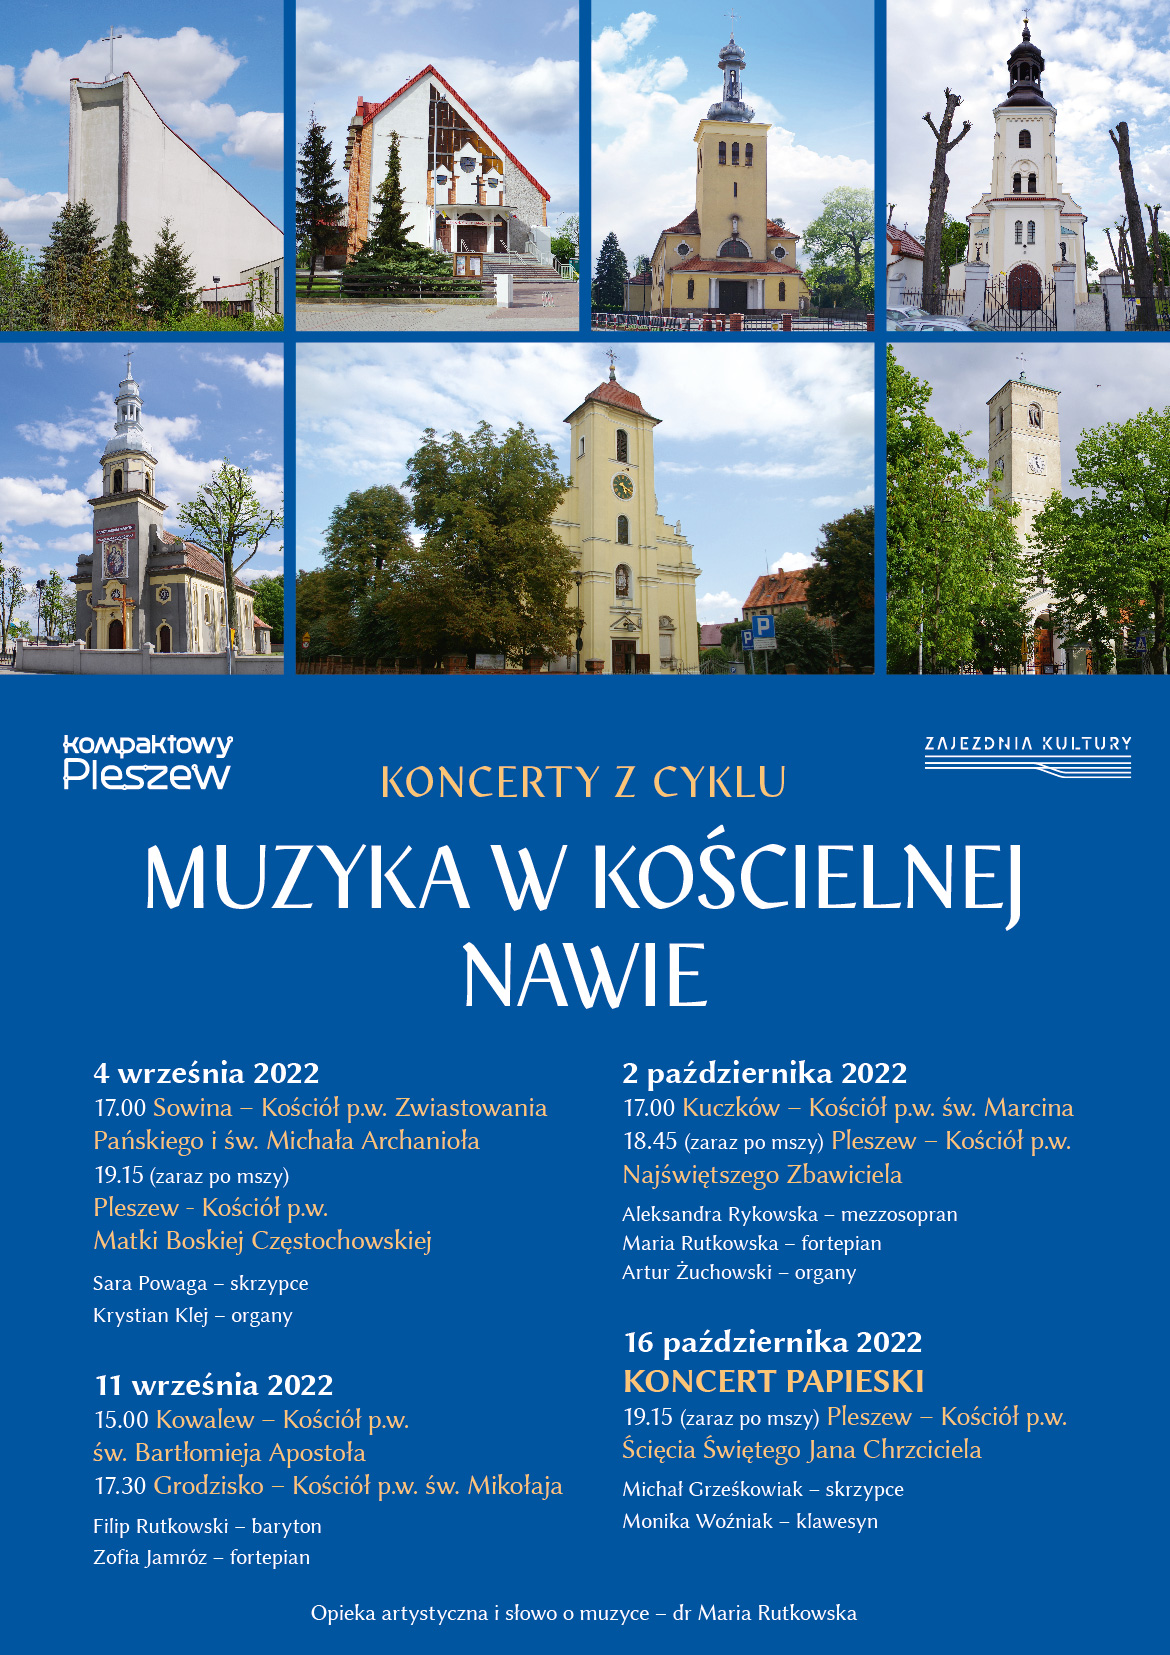 plakat cyklu wydarzeń "Muzyka w kościelnej nawie" odbywających się w kościołach w gminie Pleszew